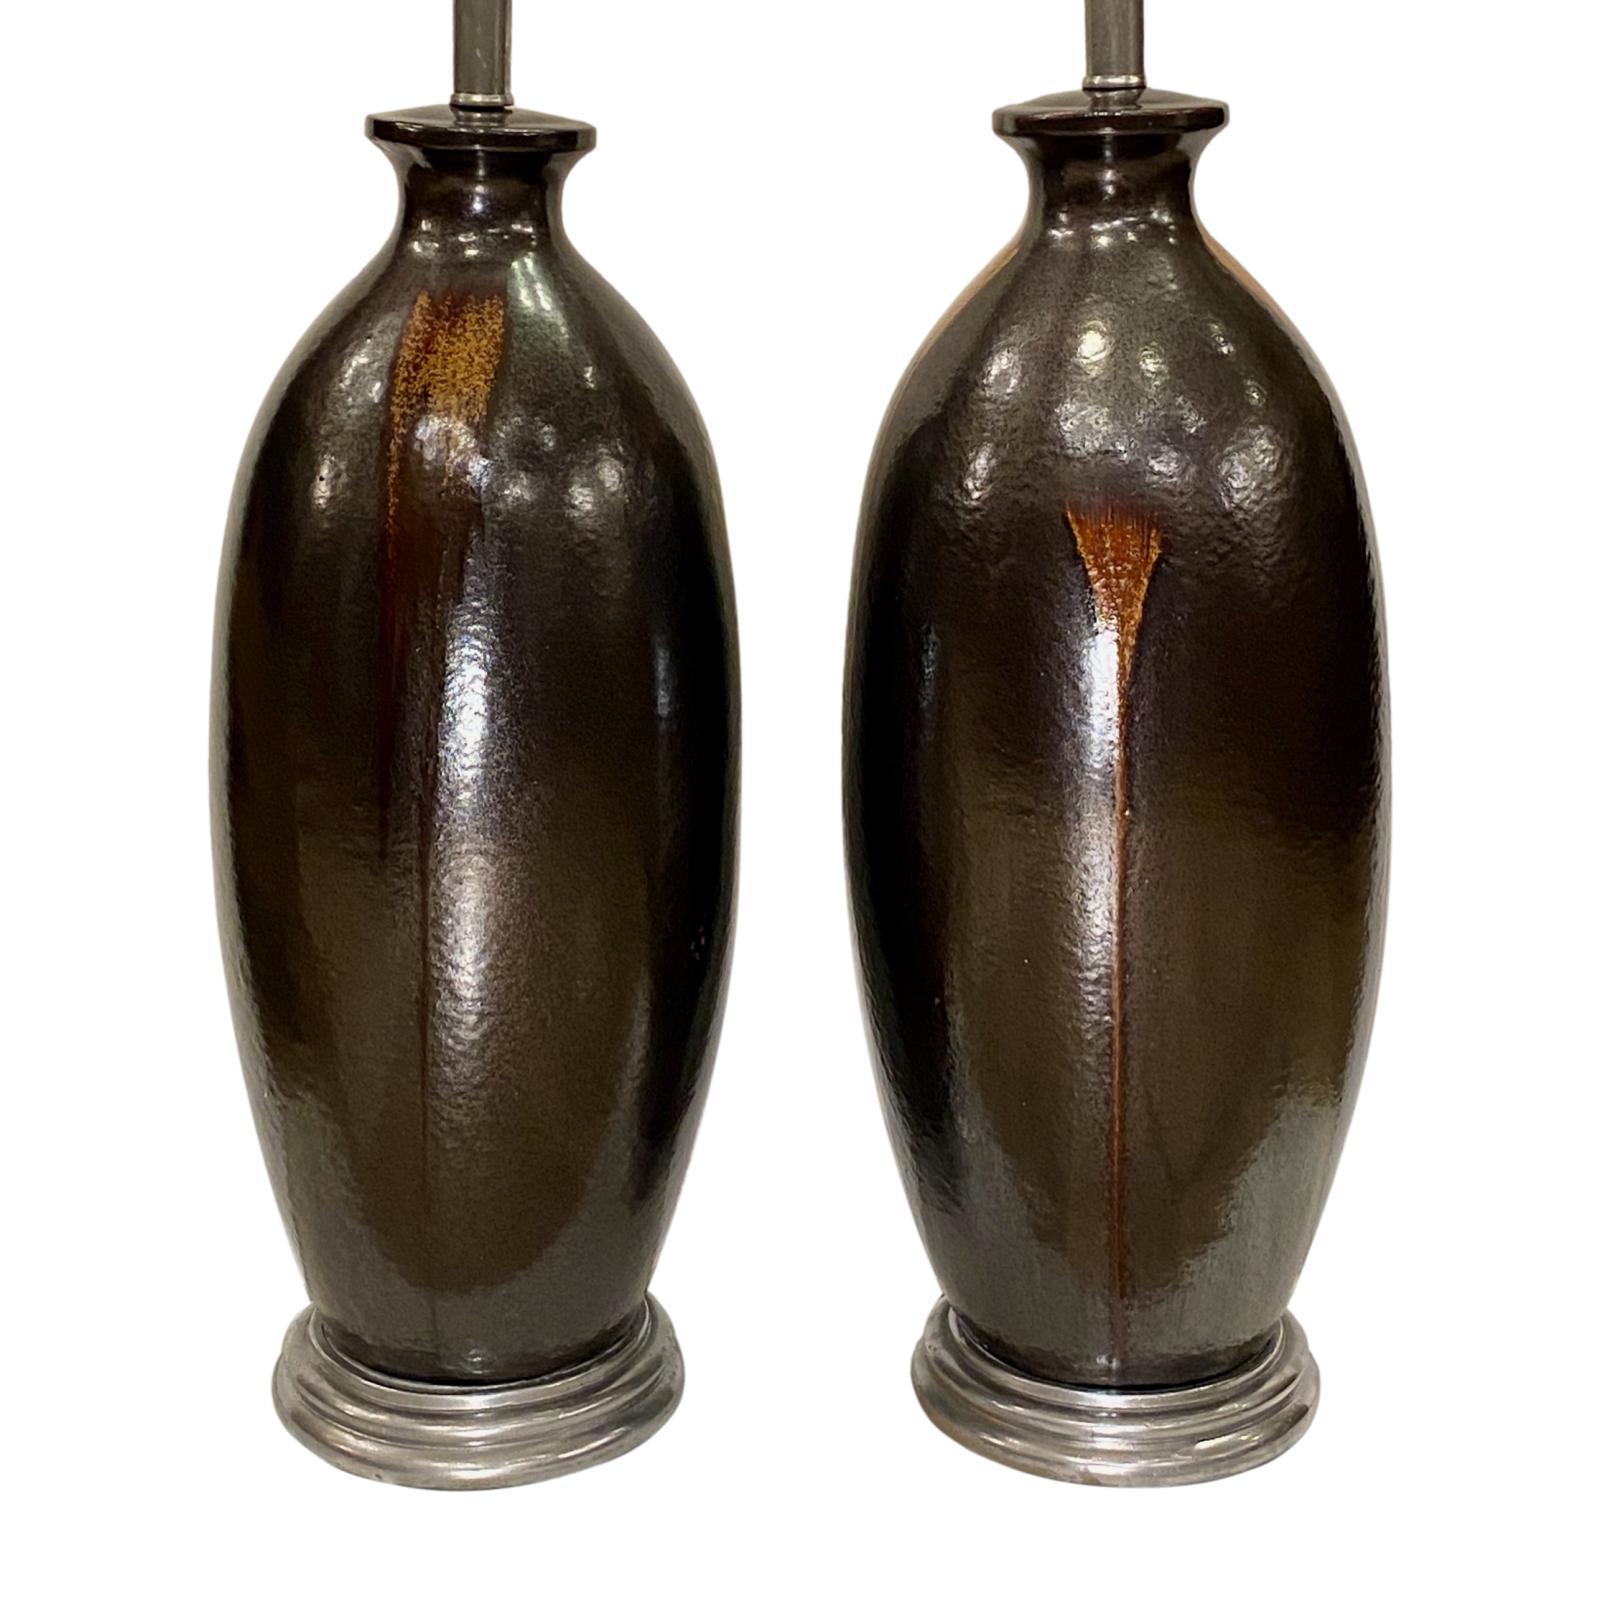 Ein Paar großer französischer braun glasierter Keramik-Tischlampen aus den 1950er Jahren mit silbernen Blattsockeln.

Abmessungen:
Höhe des Körpers: 24